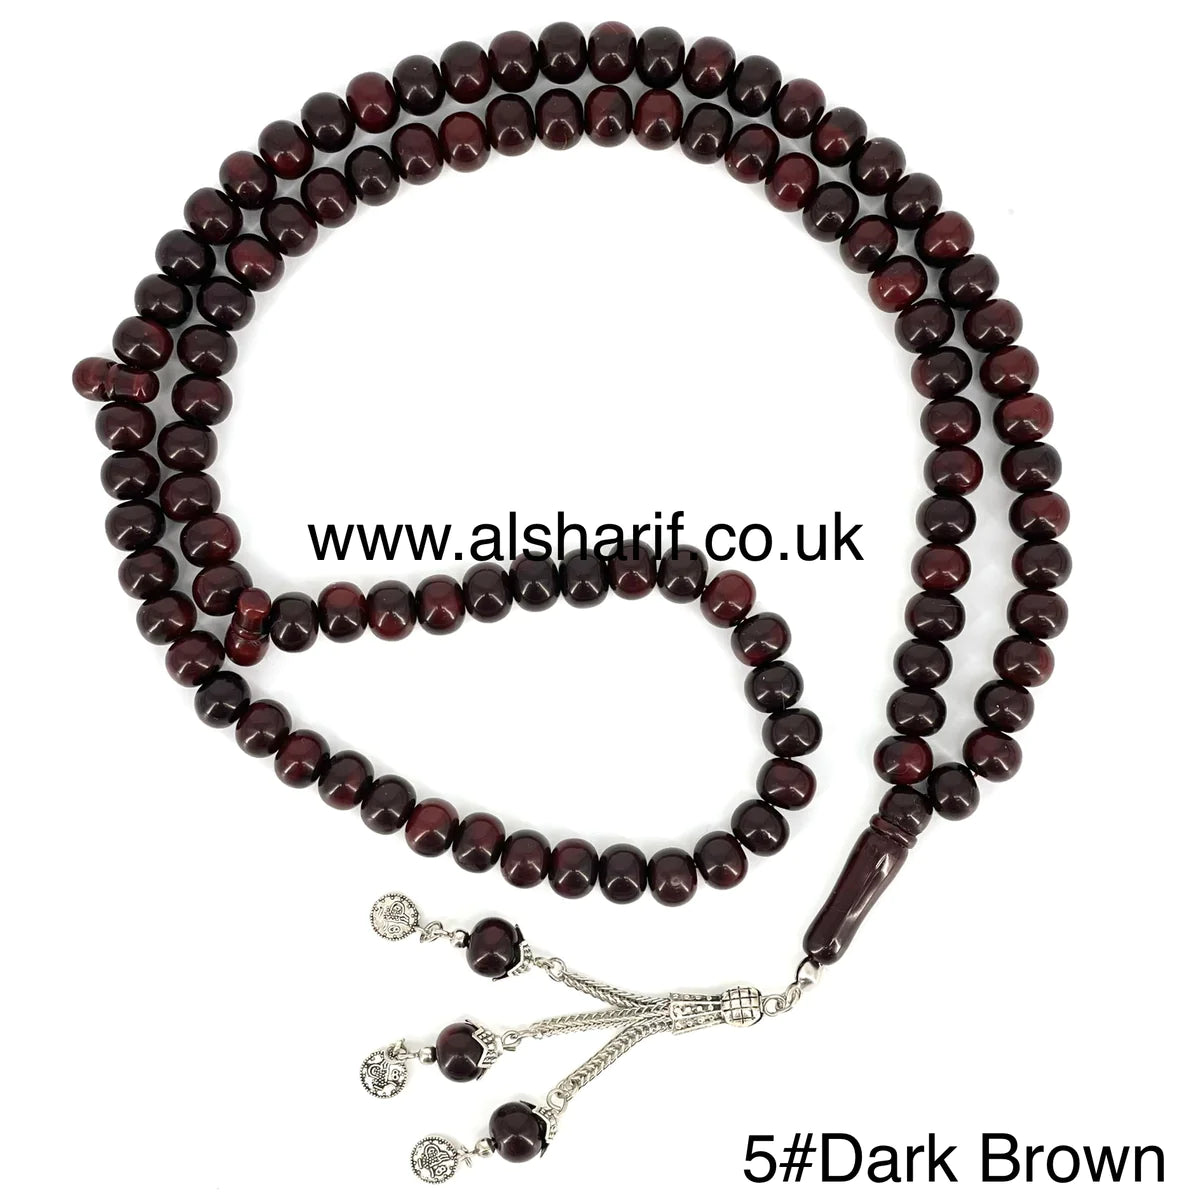 Tasbeeh 99 Beads 5#Dark Brown